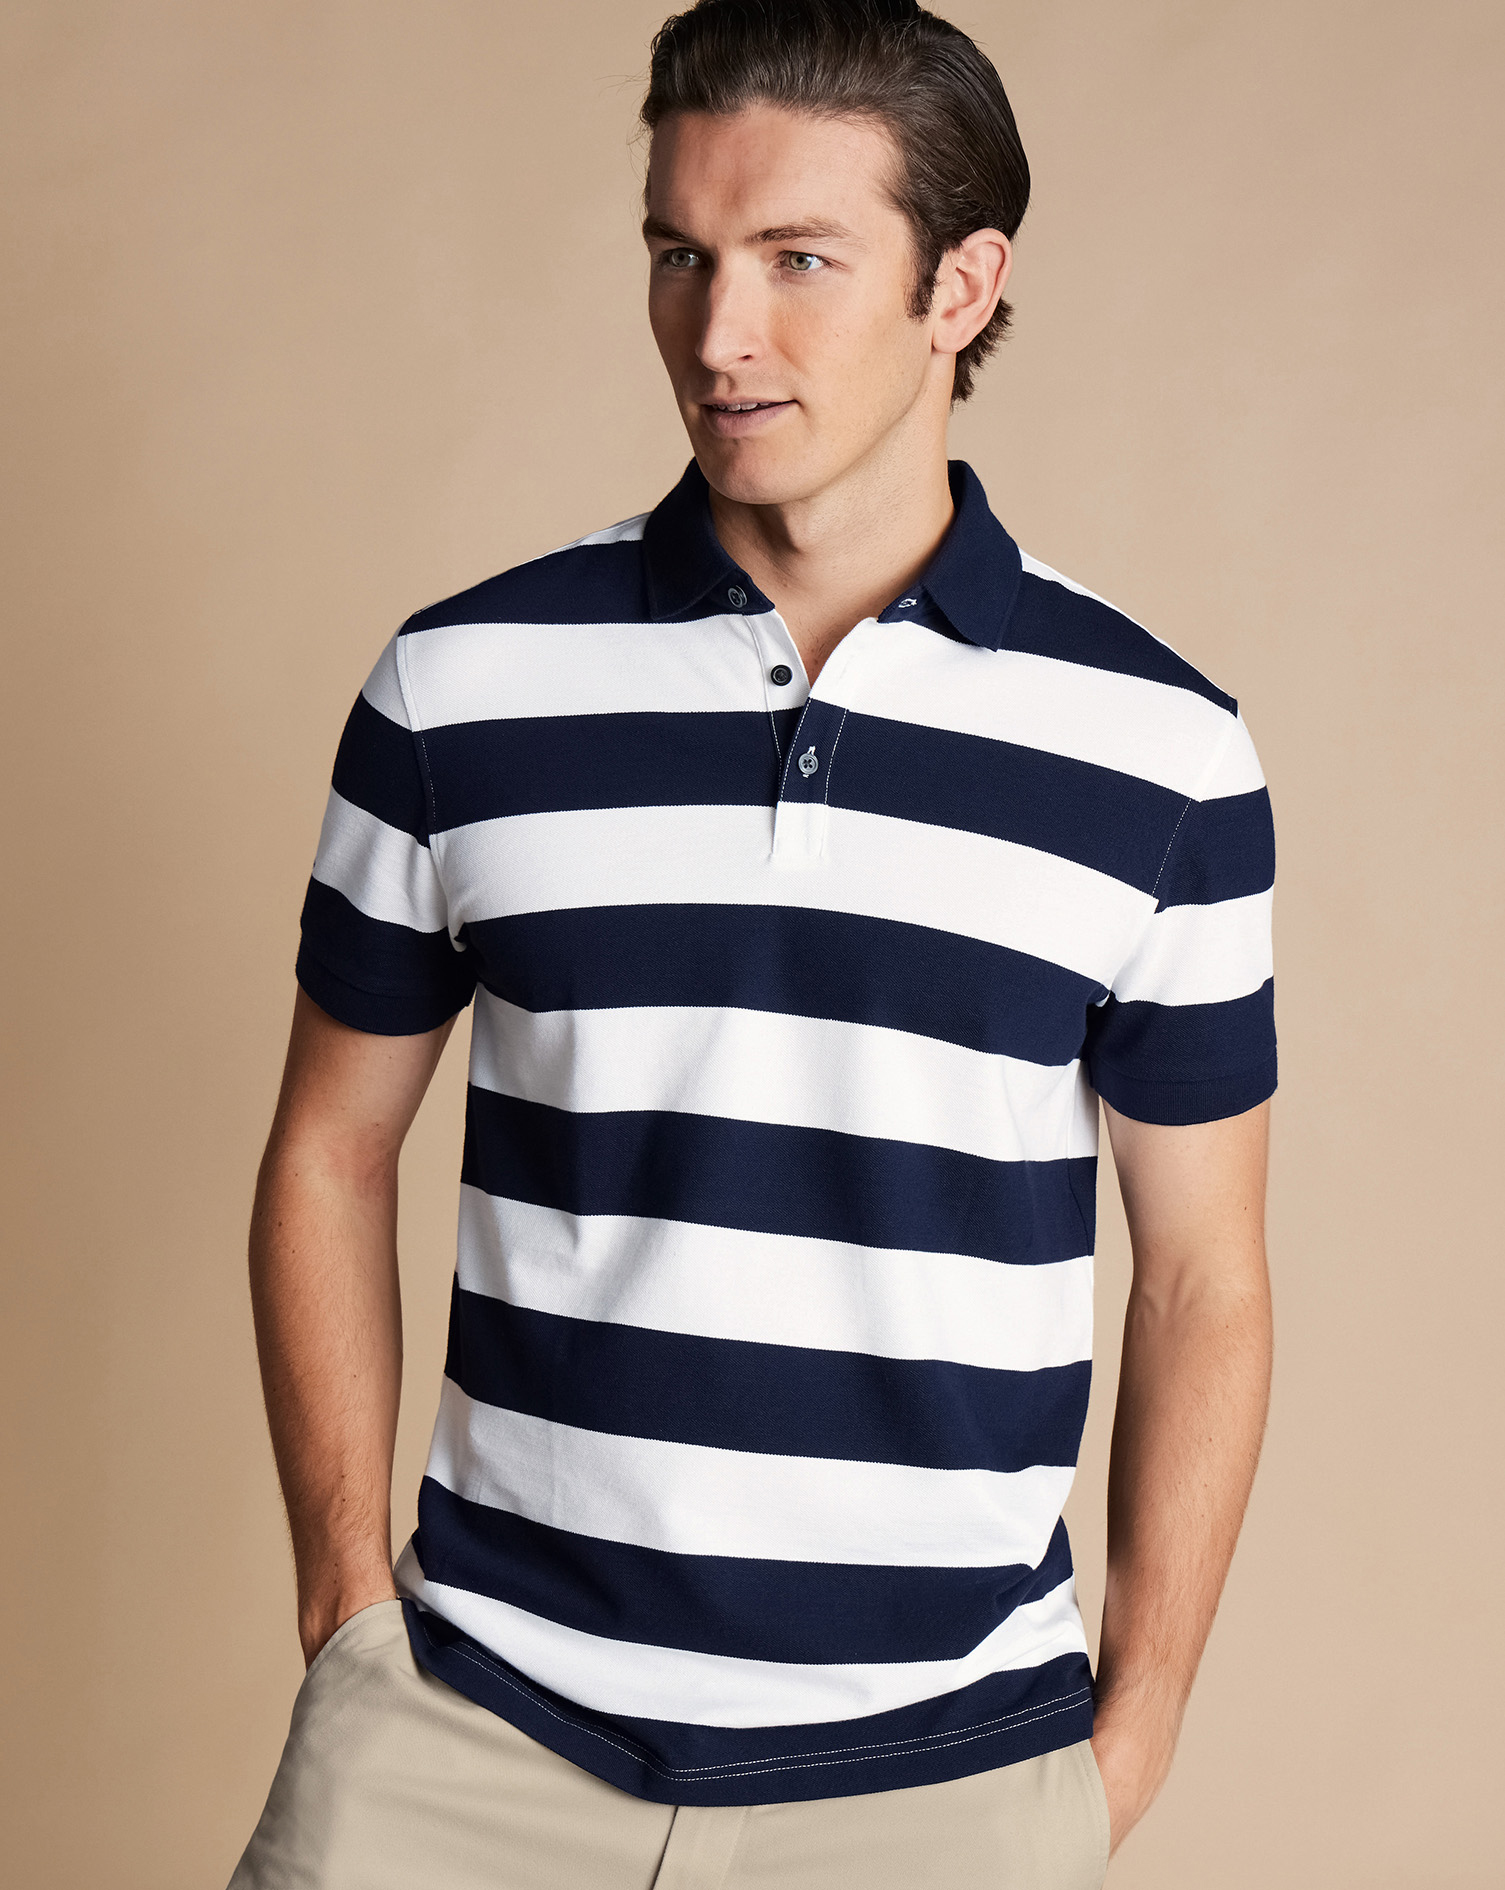 Men's Charles Tyrwhitt Pique Polo Shirt Block Stripe - Navy & White Blue Size XXXL Cotton
